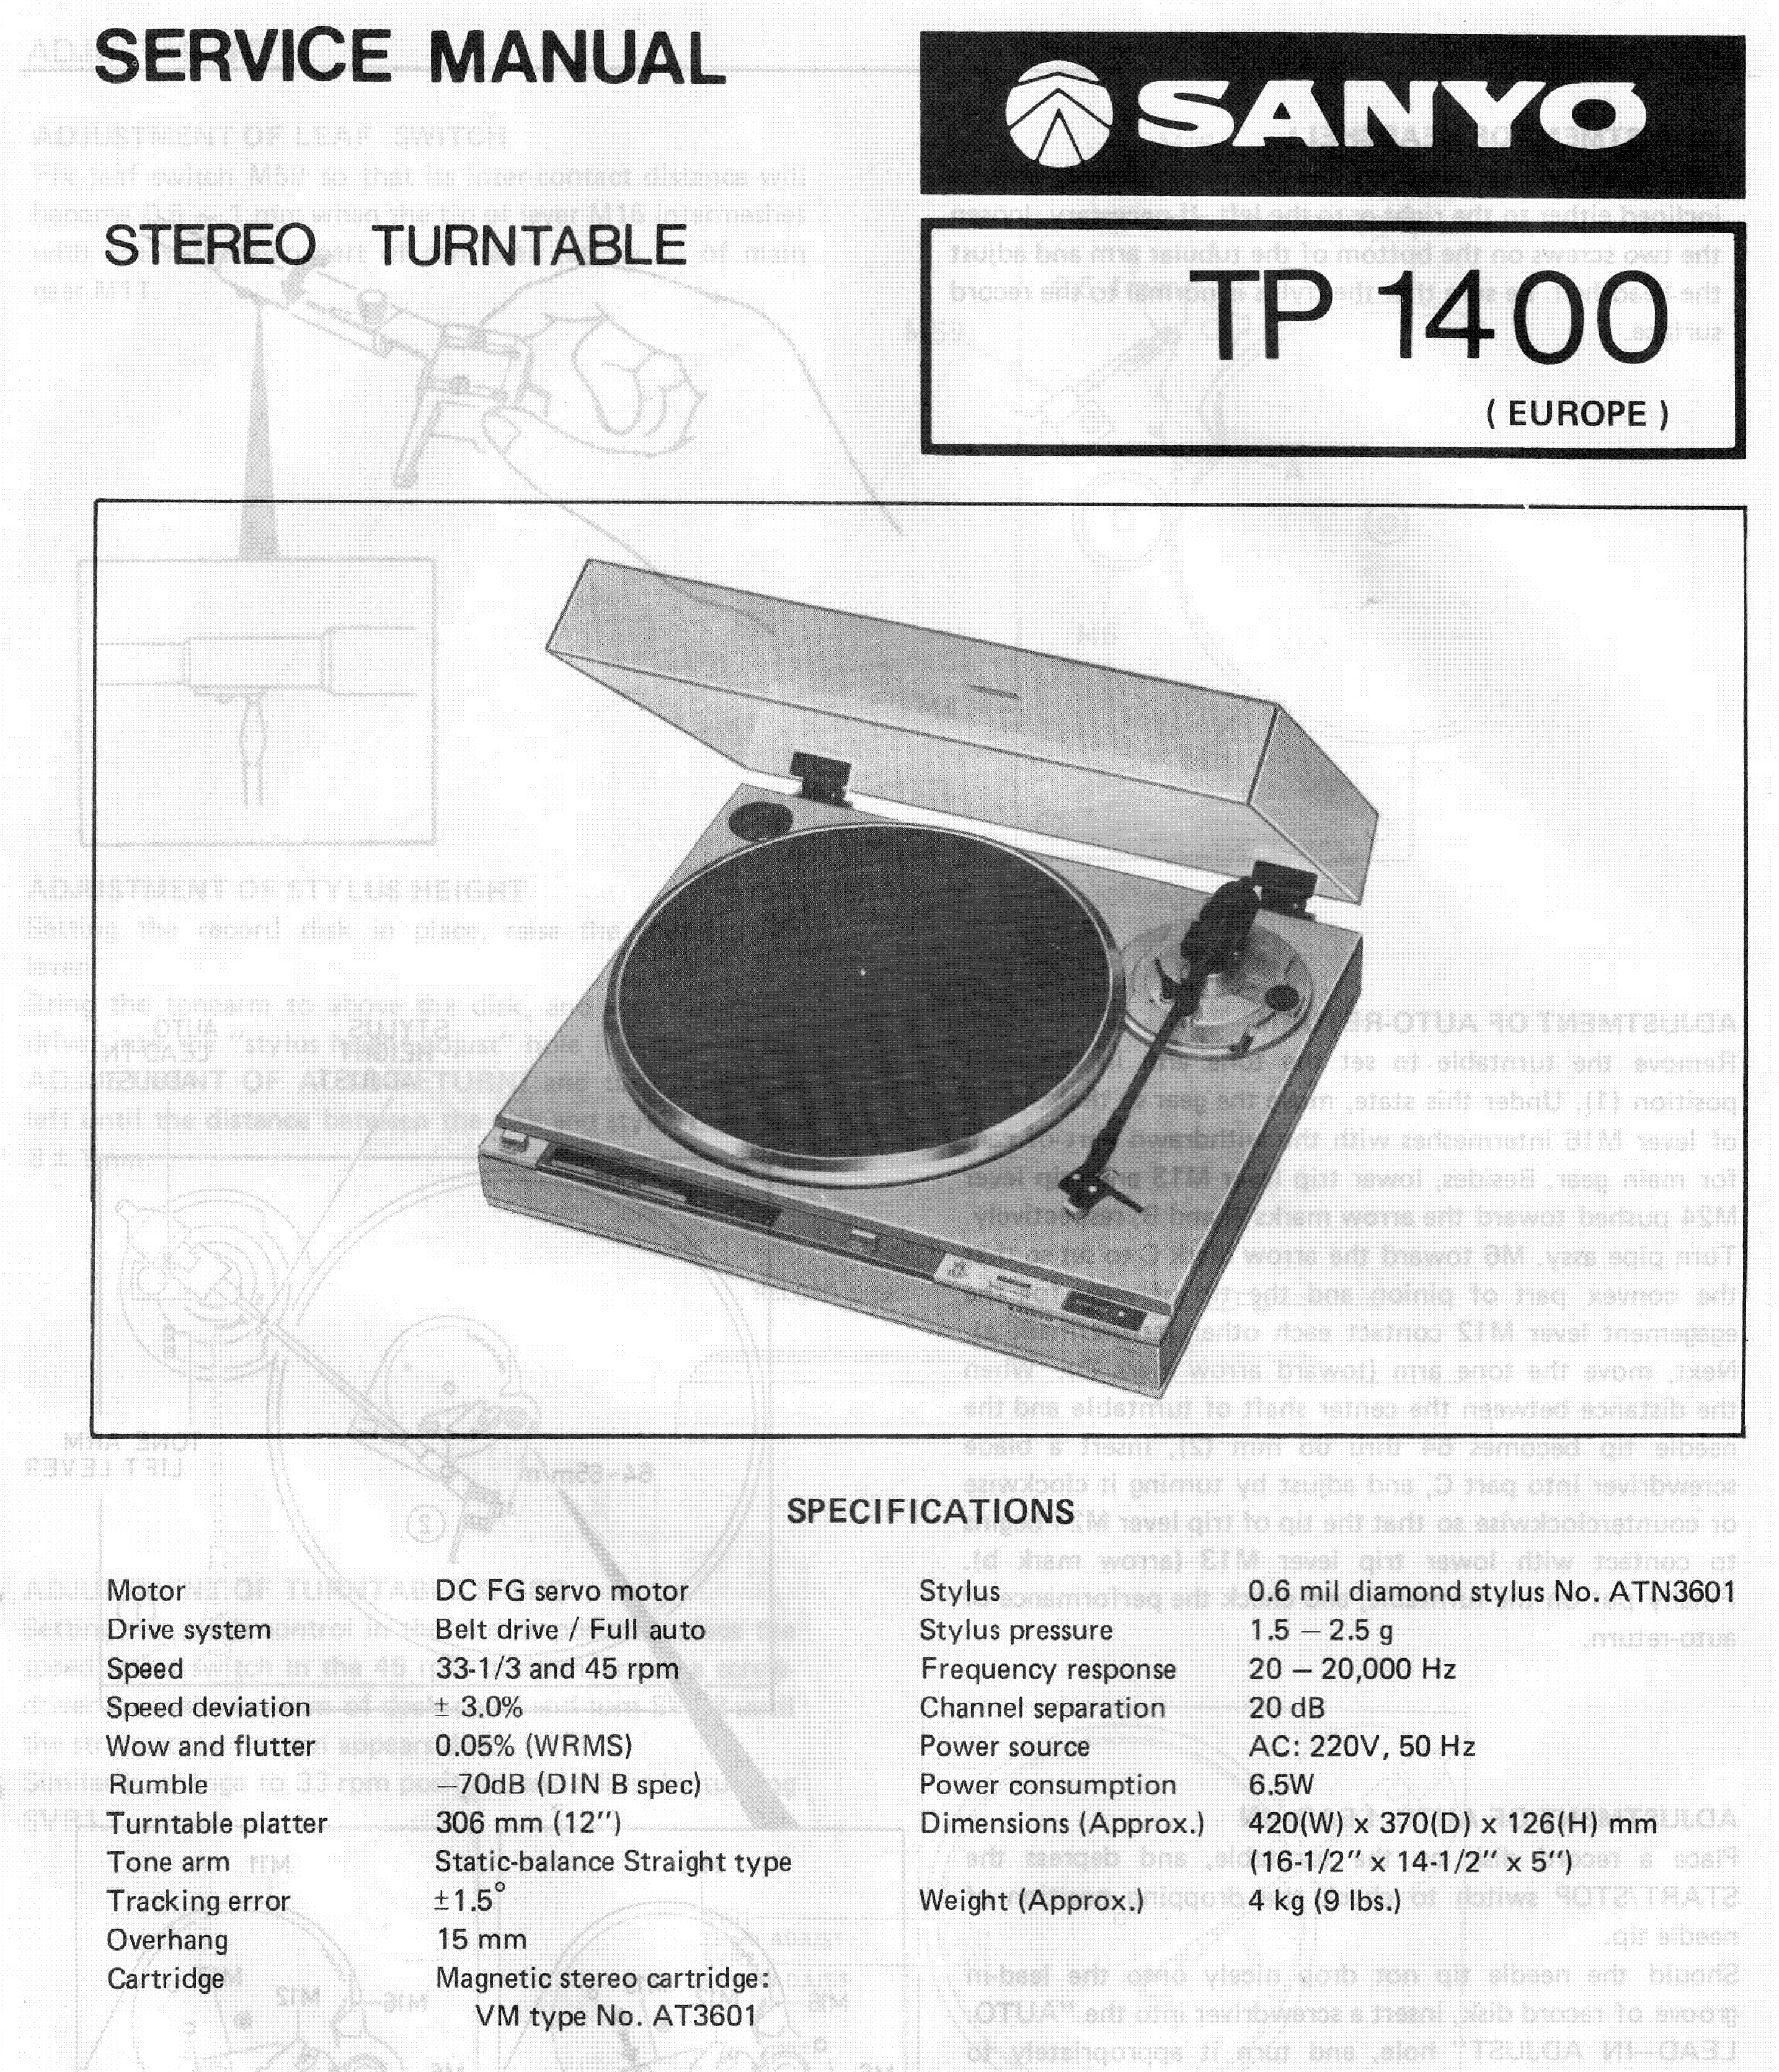 Sanyo TP-1400-Daten-1984.jpg